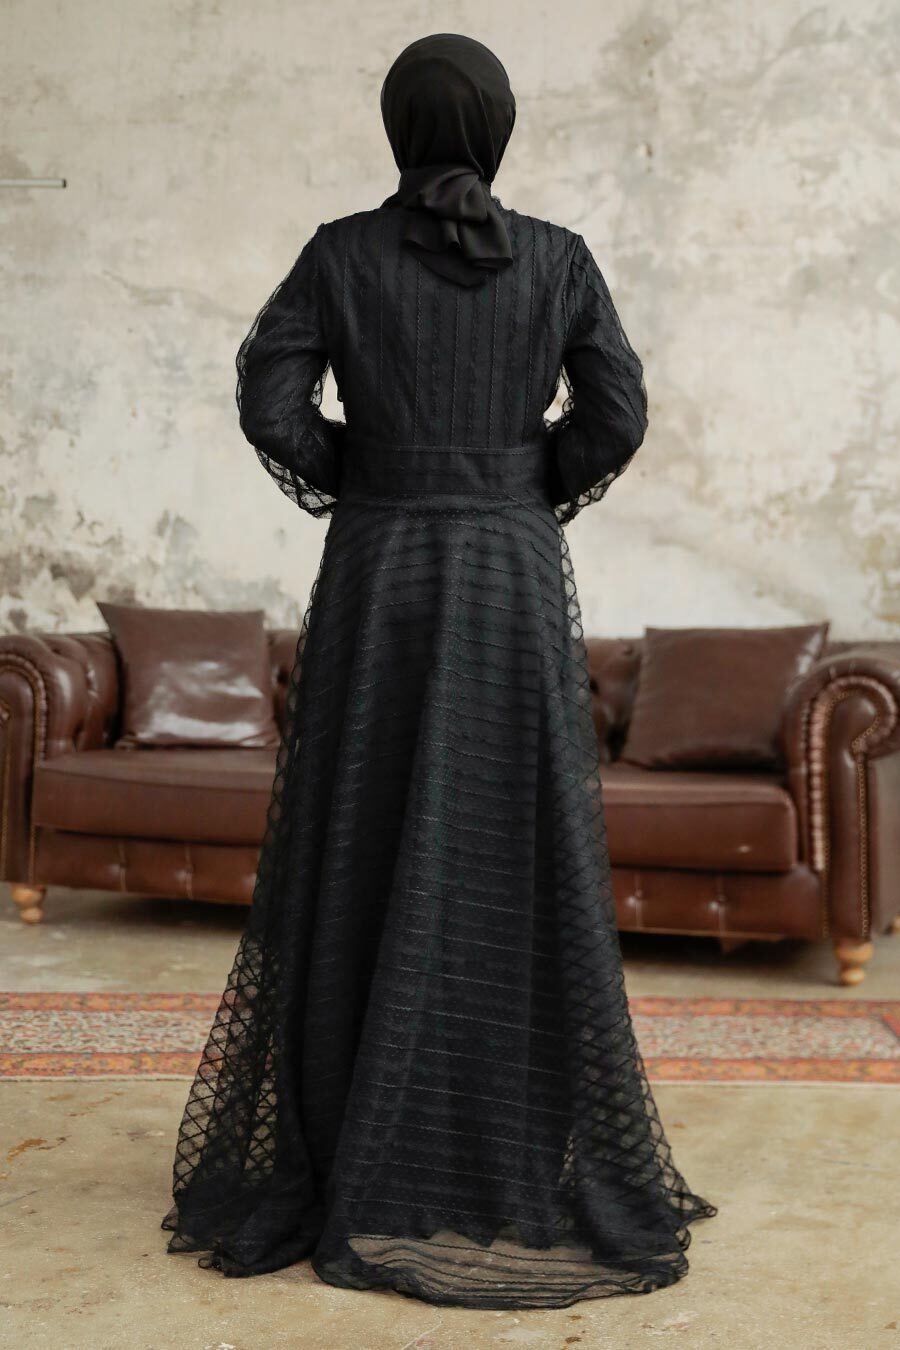 Neva Style - Stylish Black Islamic Clothing Prom Dress 38920S